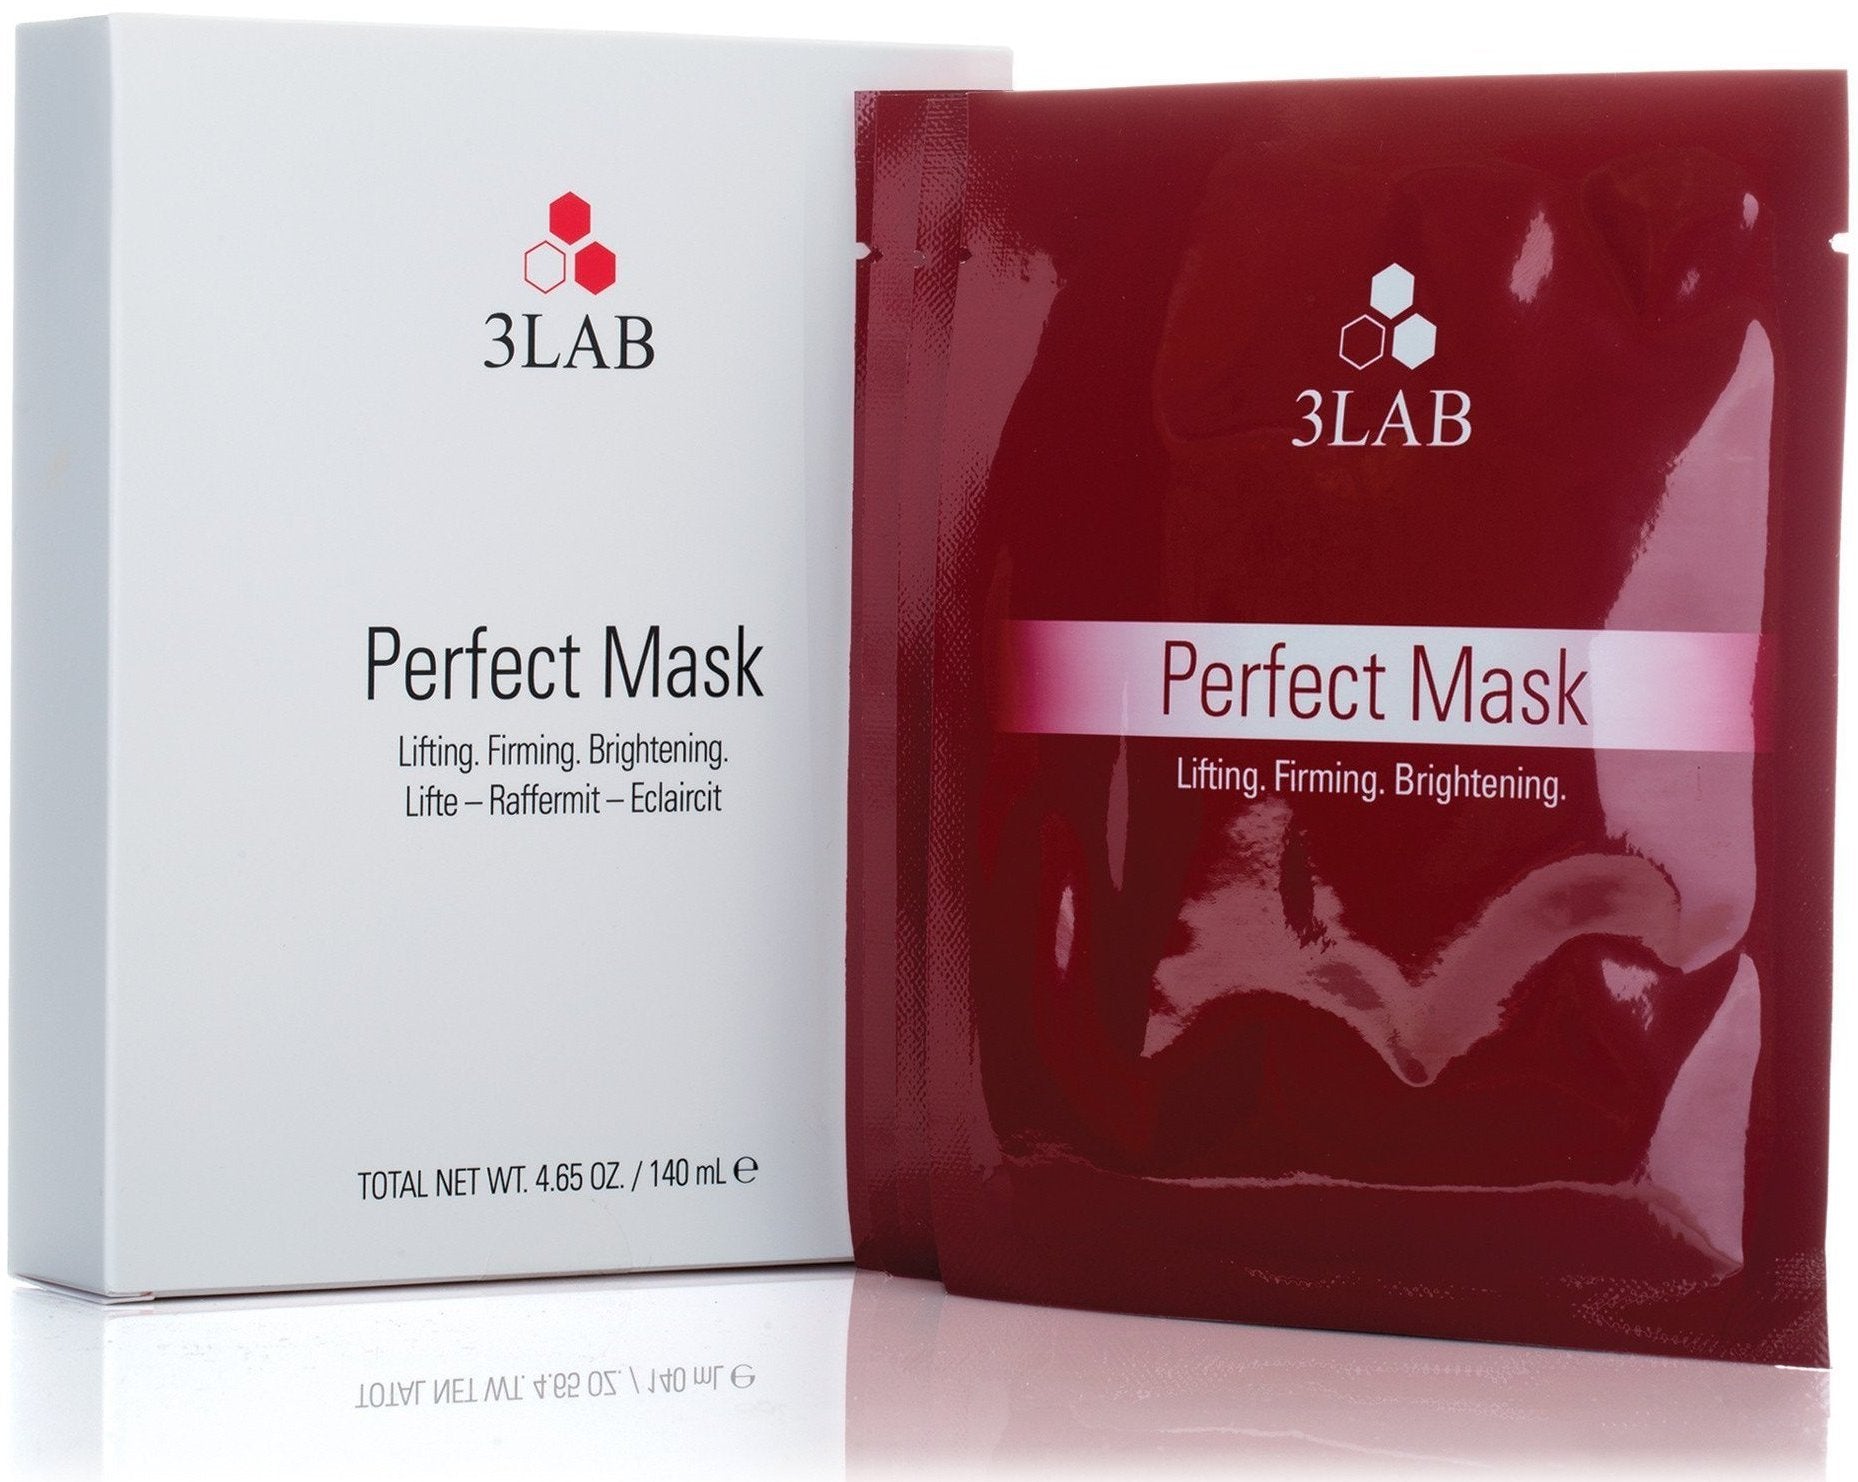 3LAB Perfect Mask - eCosmeticWorld